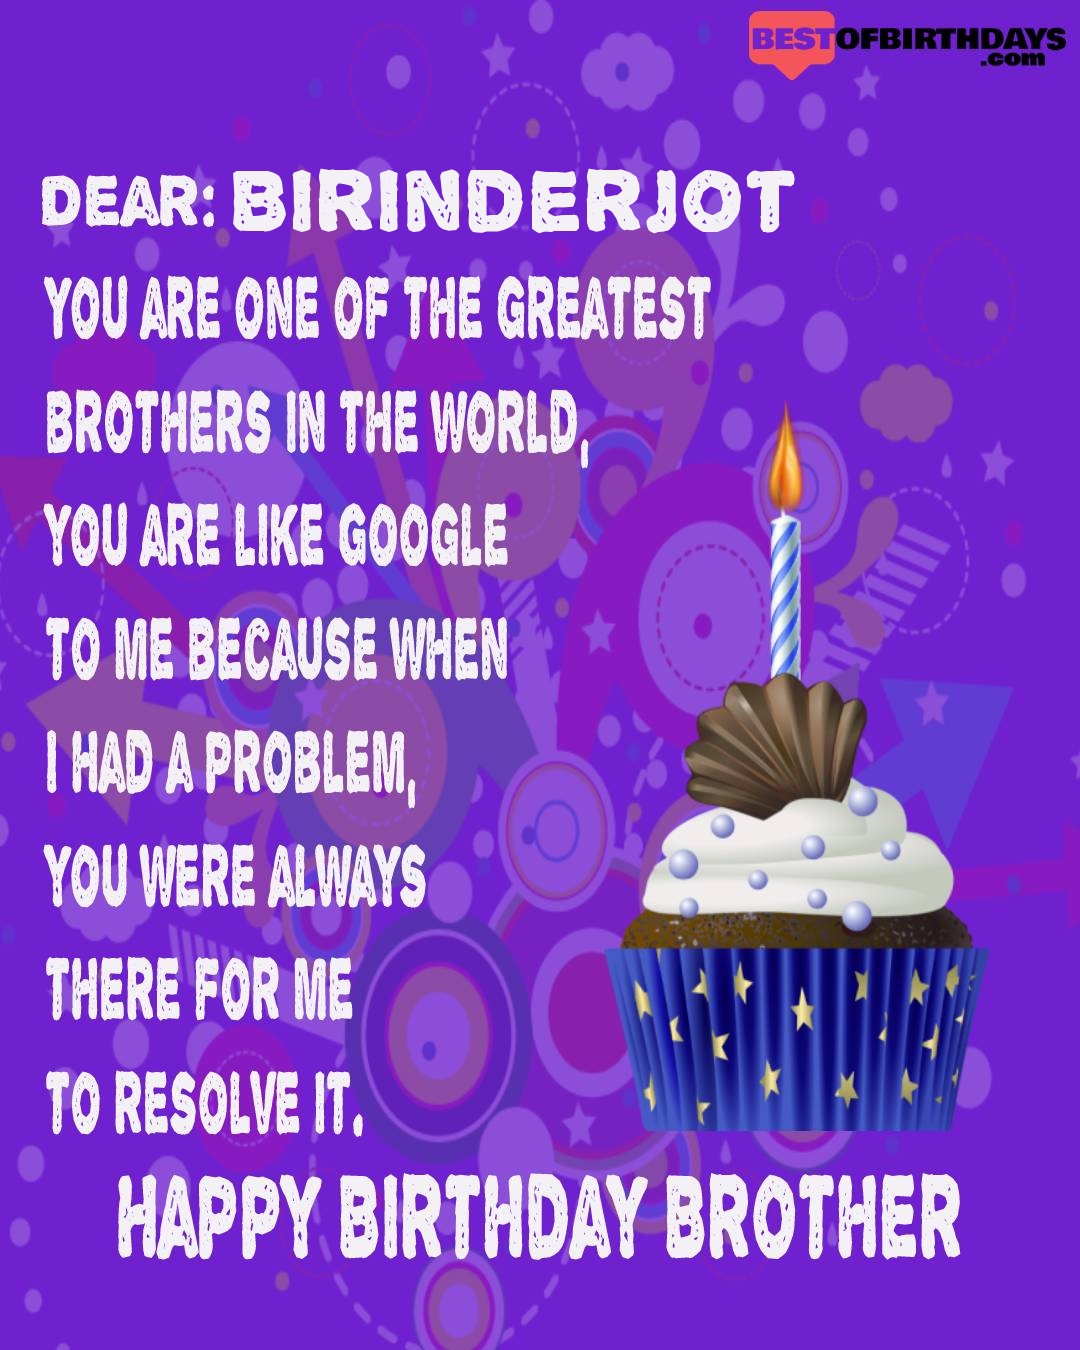 Happy birthday birinderjot bhai brother bro